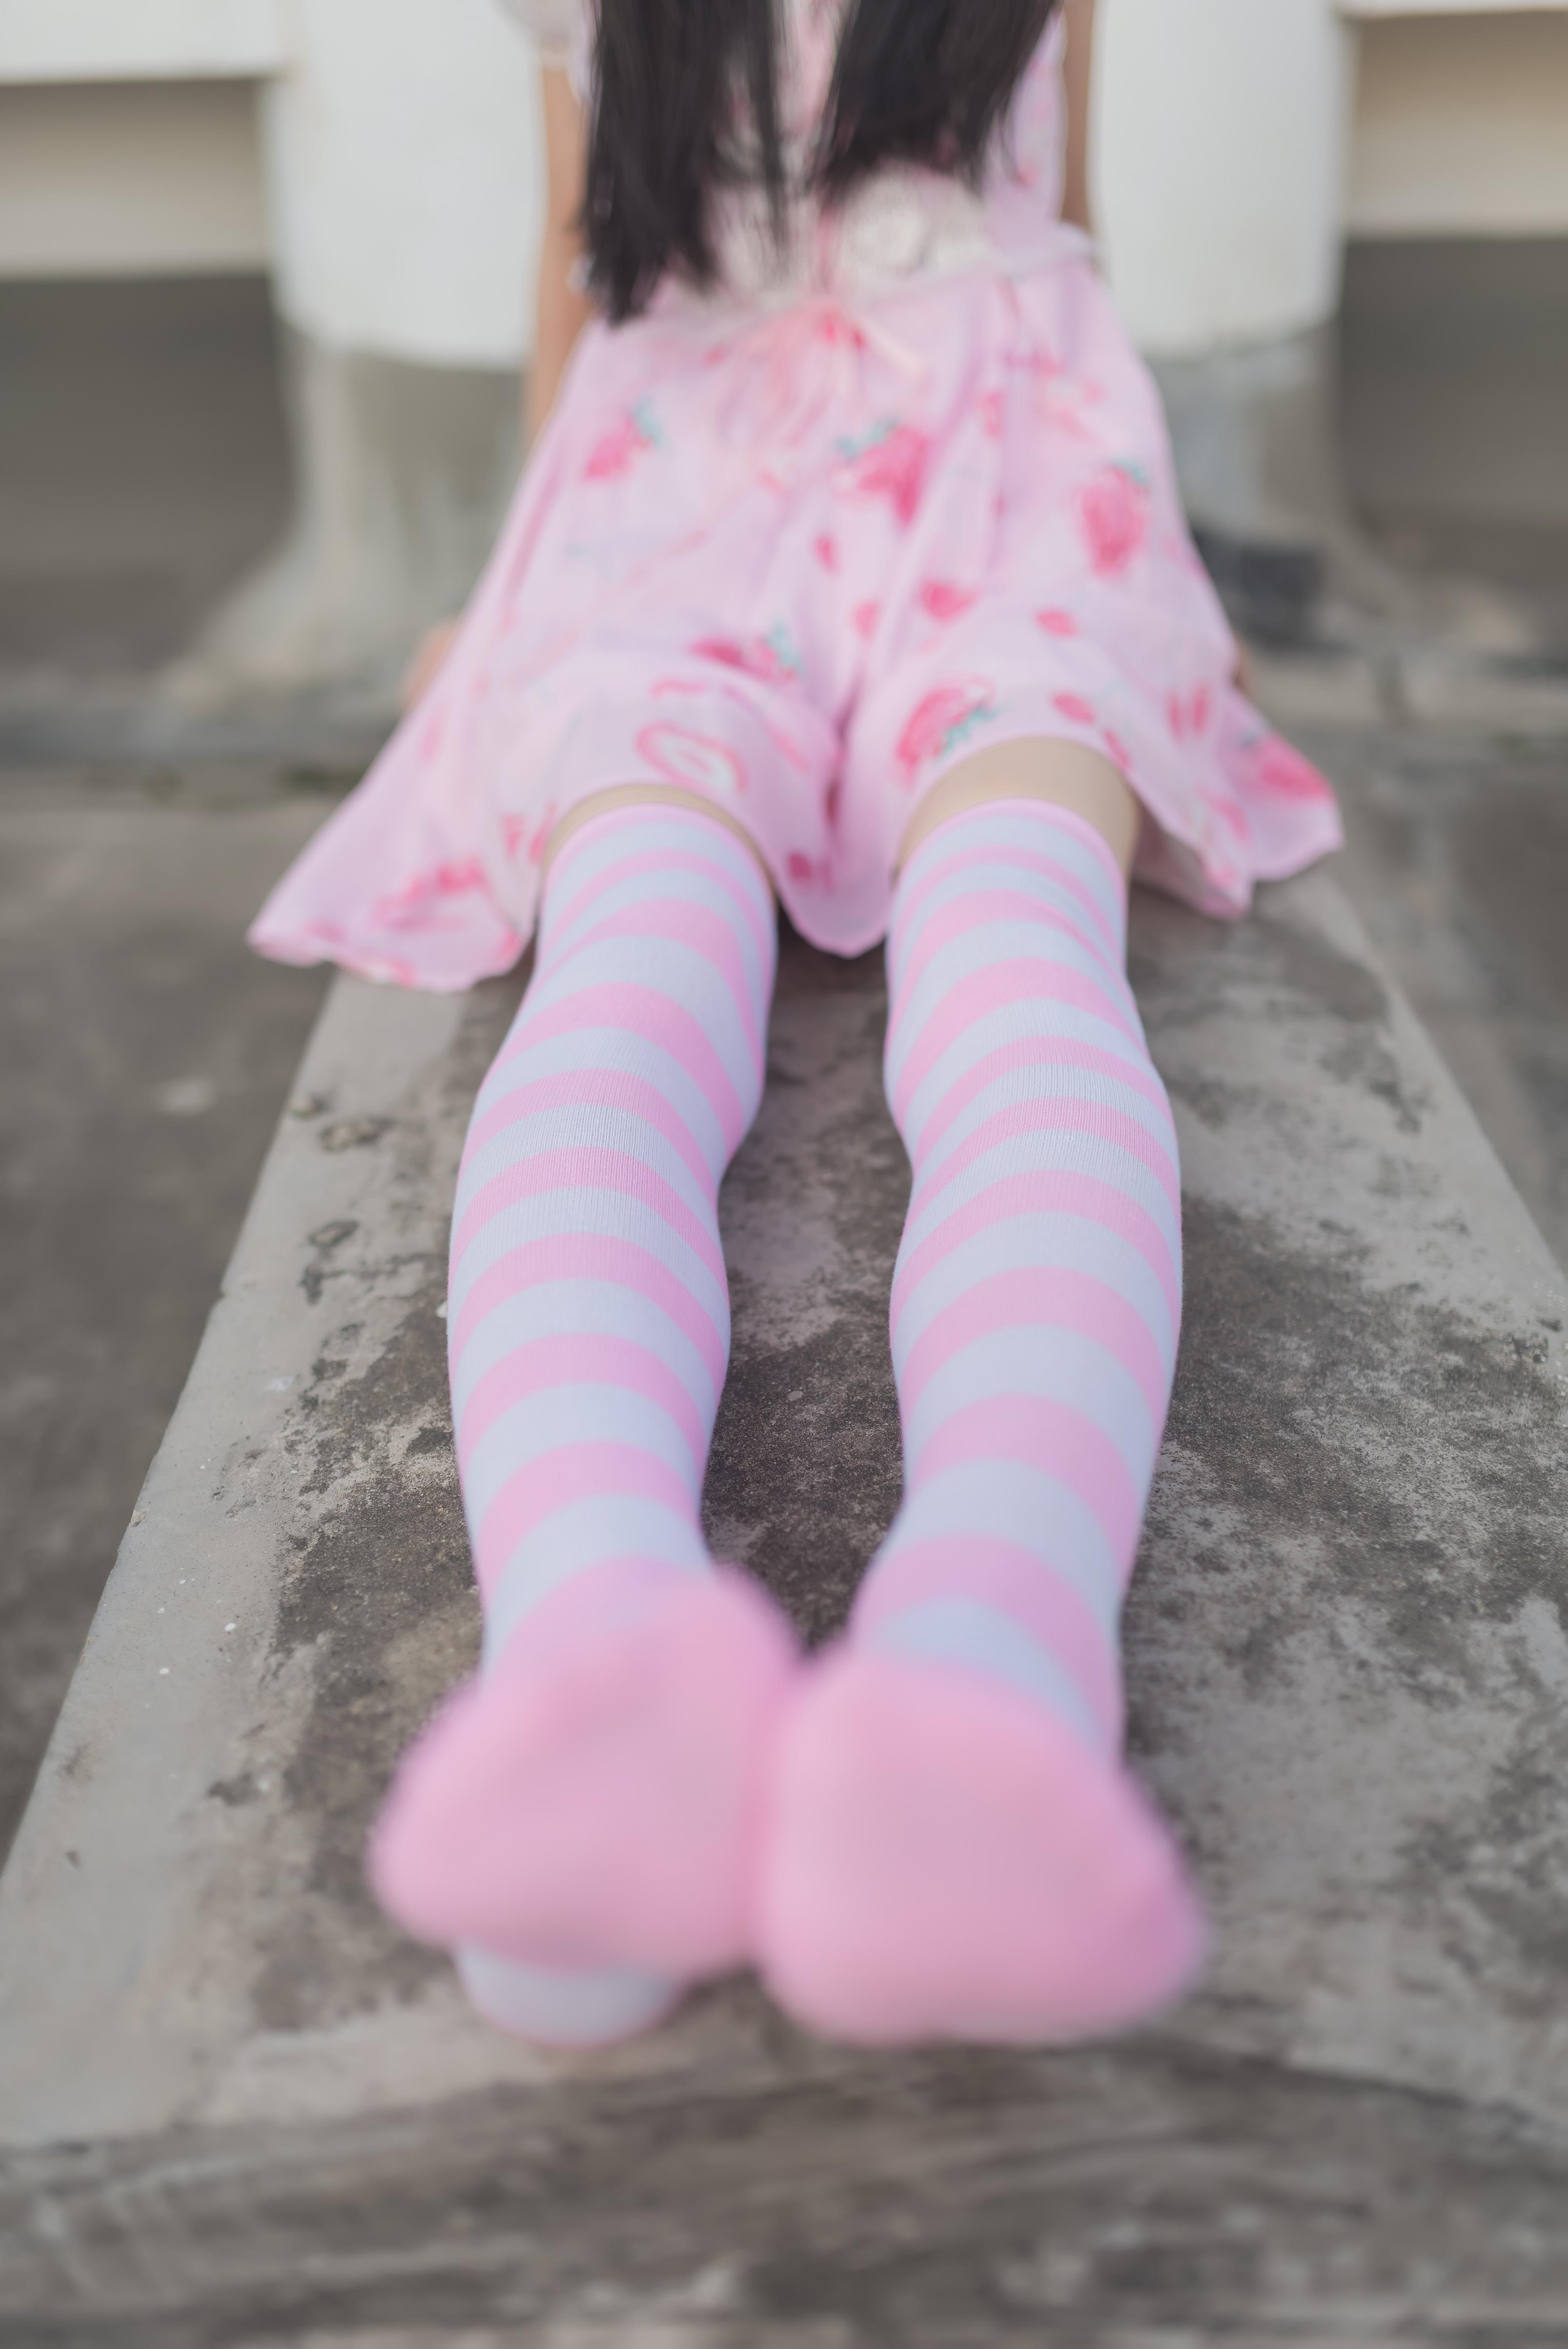 [风之领域]NO.035 性感小萝莉 粉色透视抹胸连衣裙加粉色丝袜美腿私房写真集,